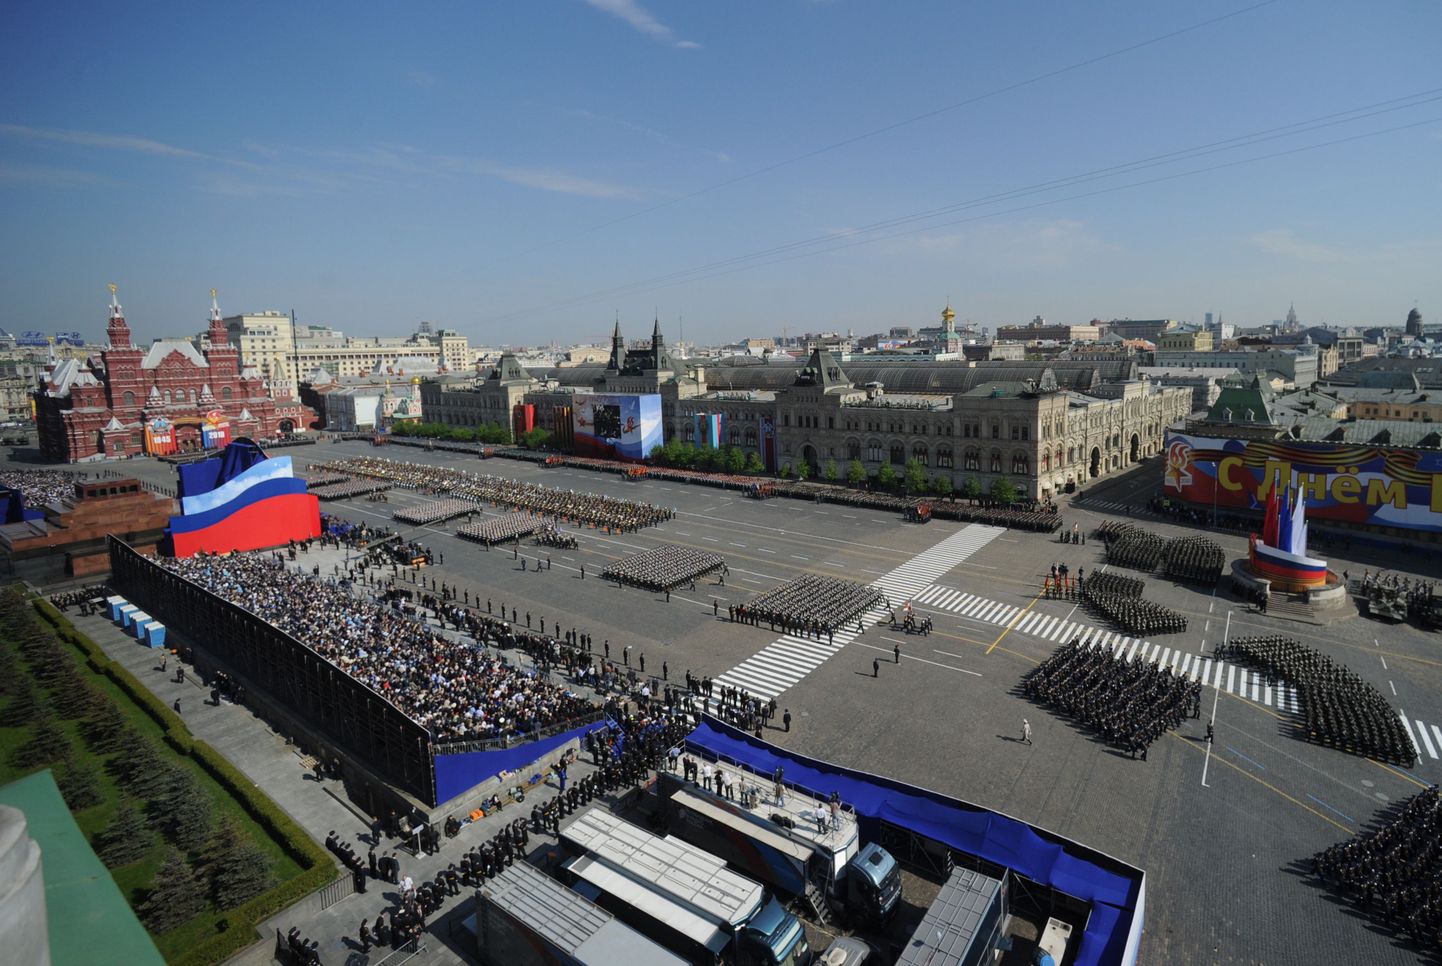 Võidupühaparaad 9. mail 2010 Moskva Punasel väljakul.